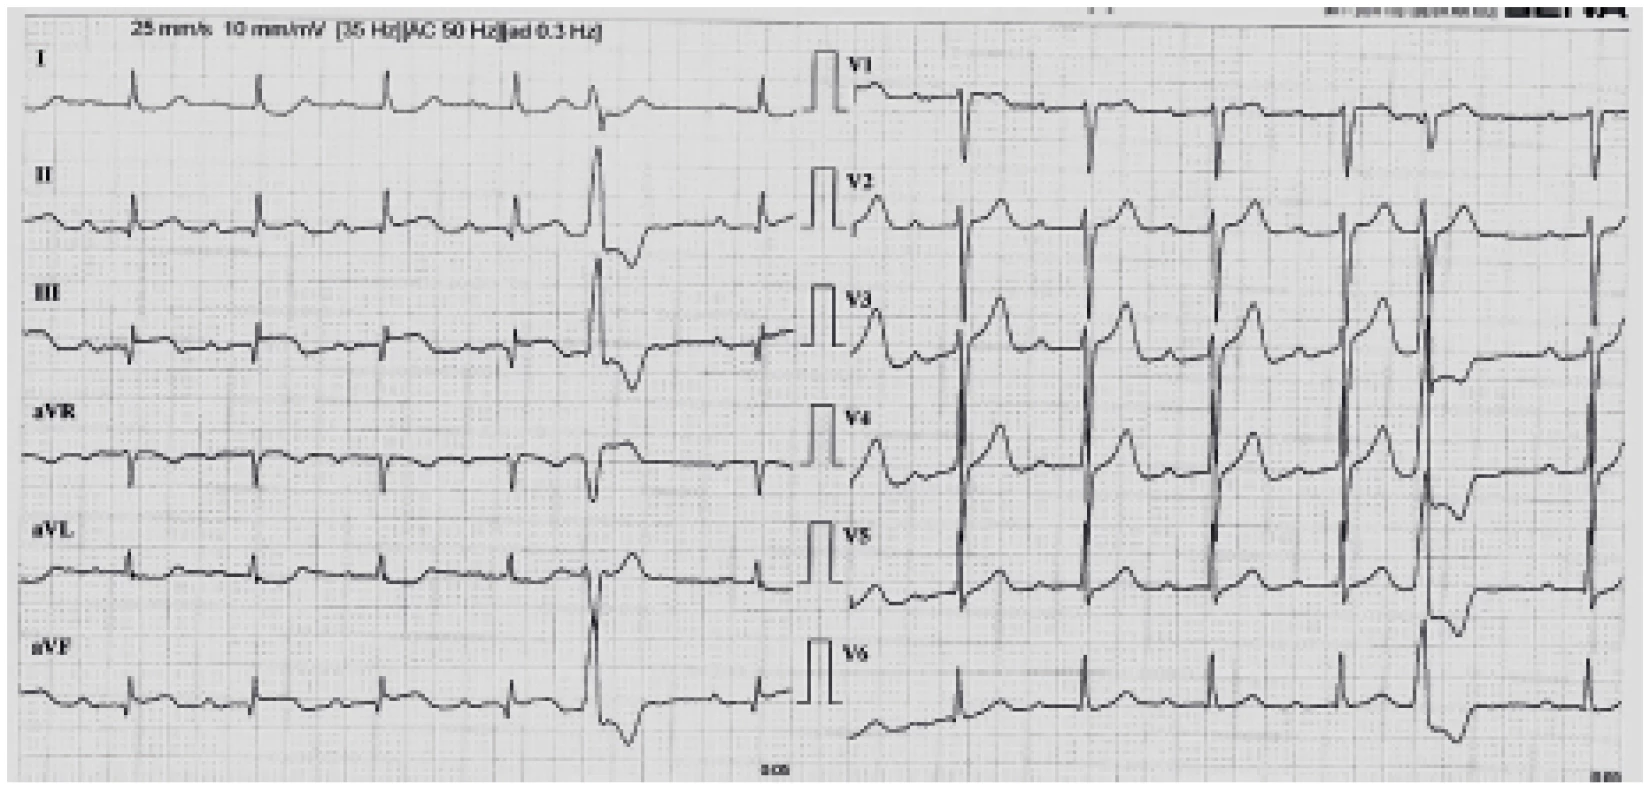 EKG křivka 3: kontrolní EKG po dokončení
trombolýzy s úpravou změn ST úseků